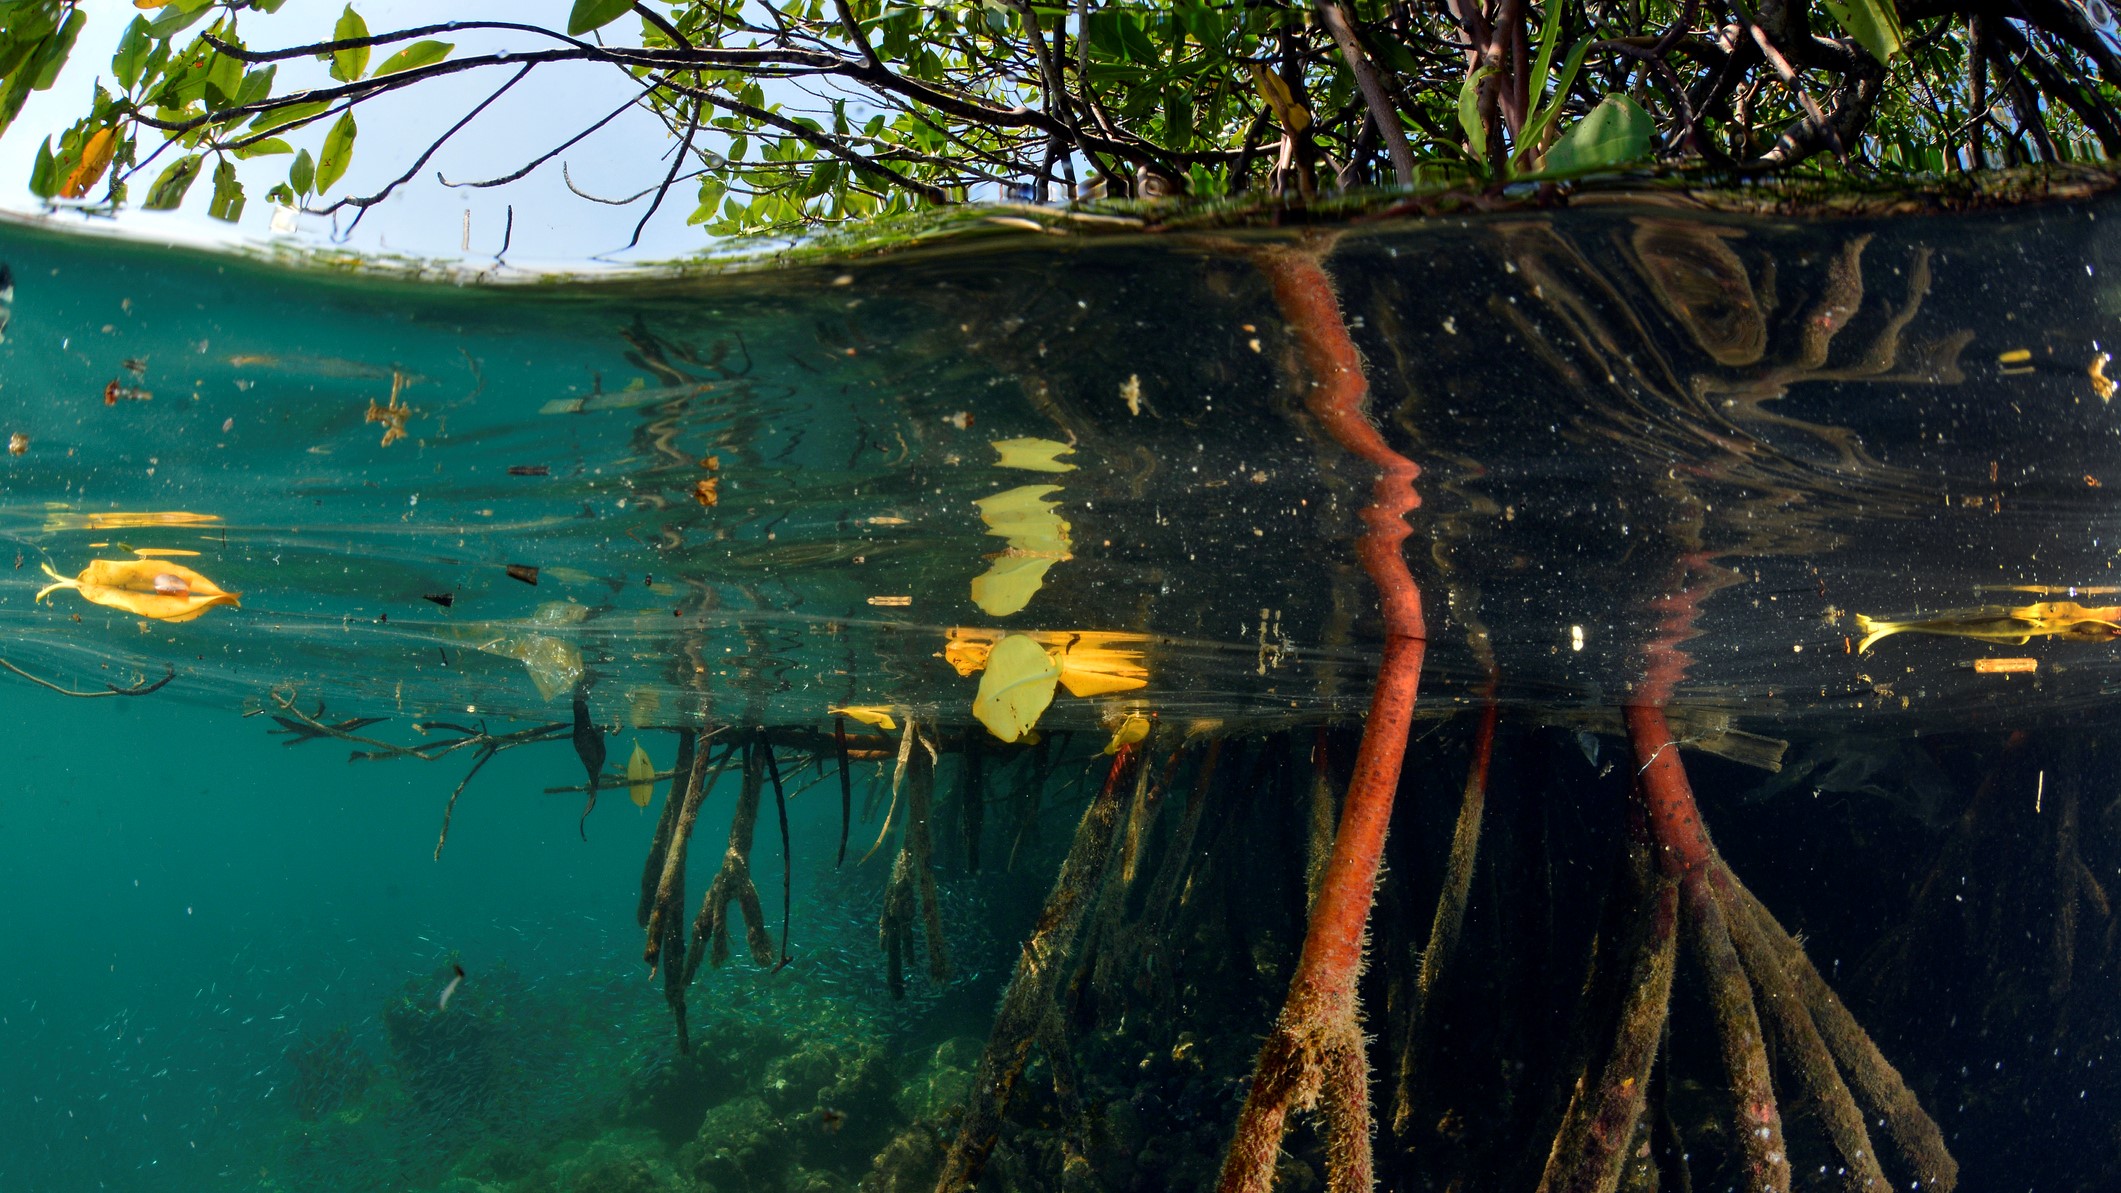 Gambar akar bakau di bawah air di lahan basah tropis.